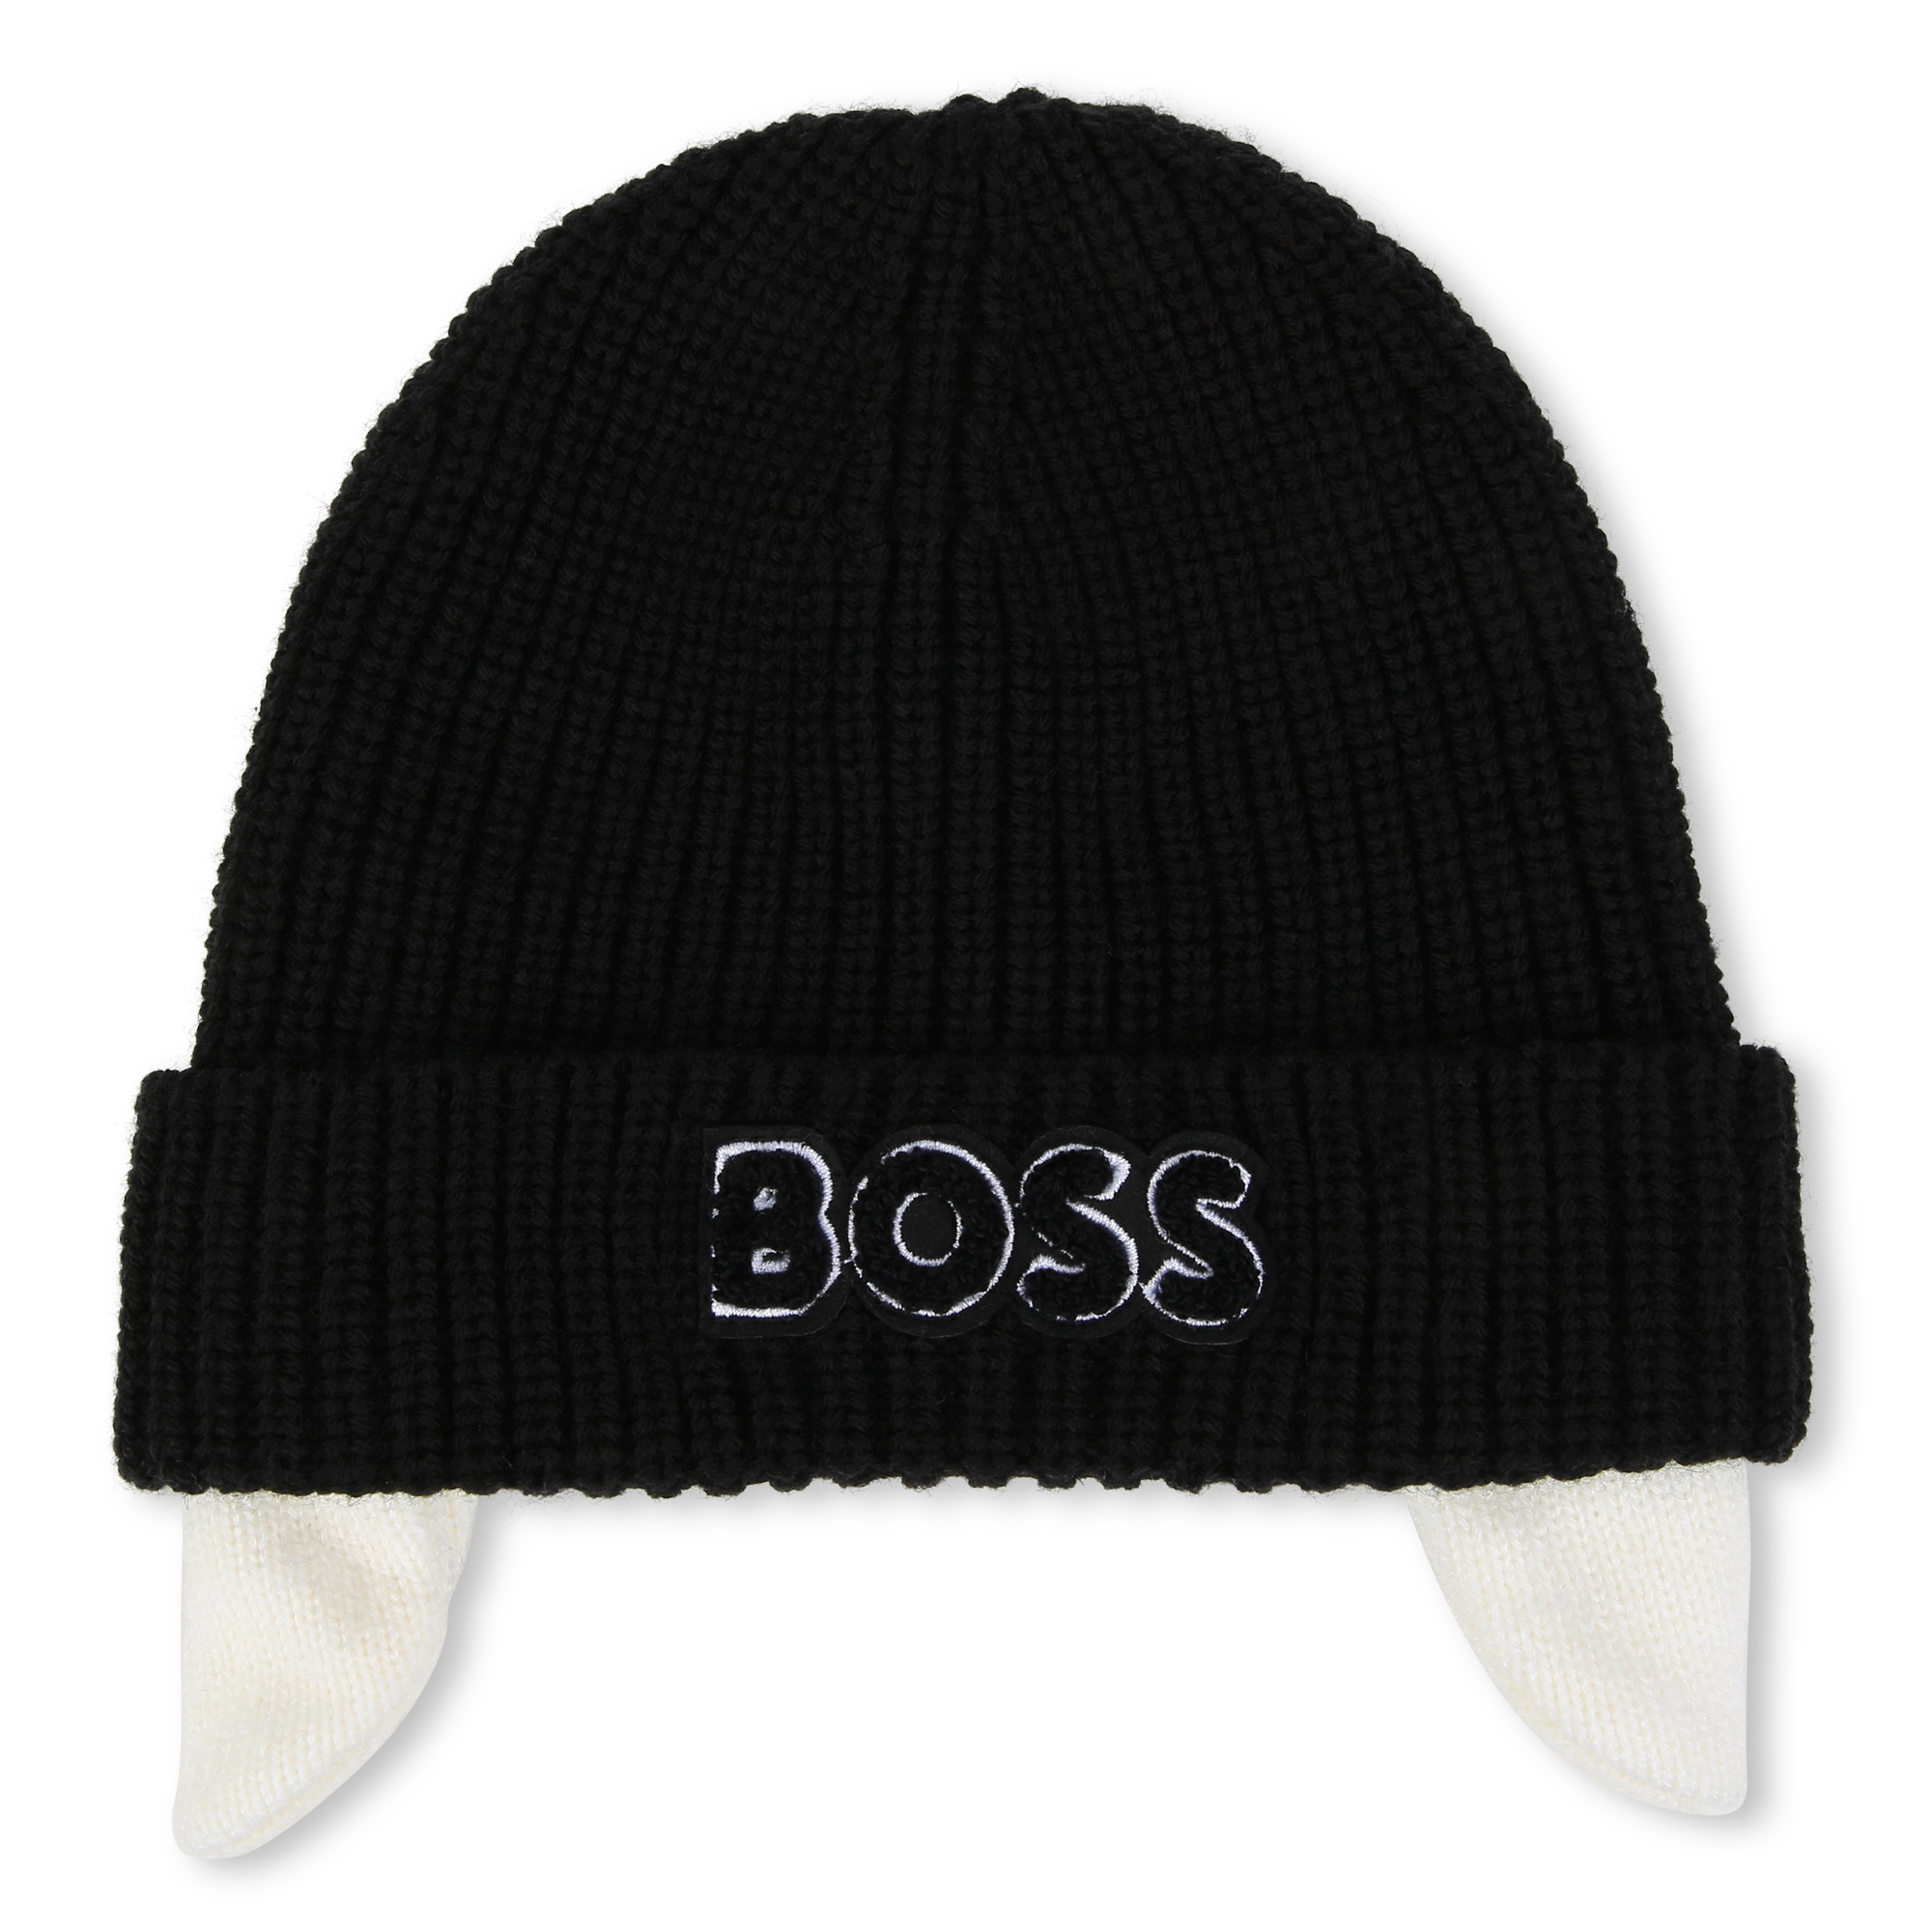 Fleece hat BOSS for BOY